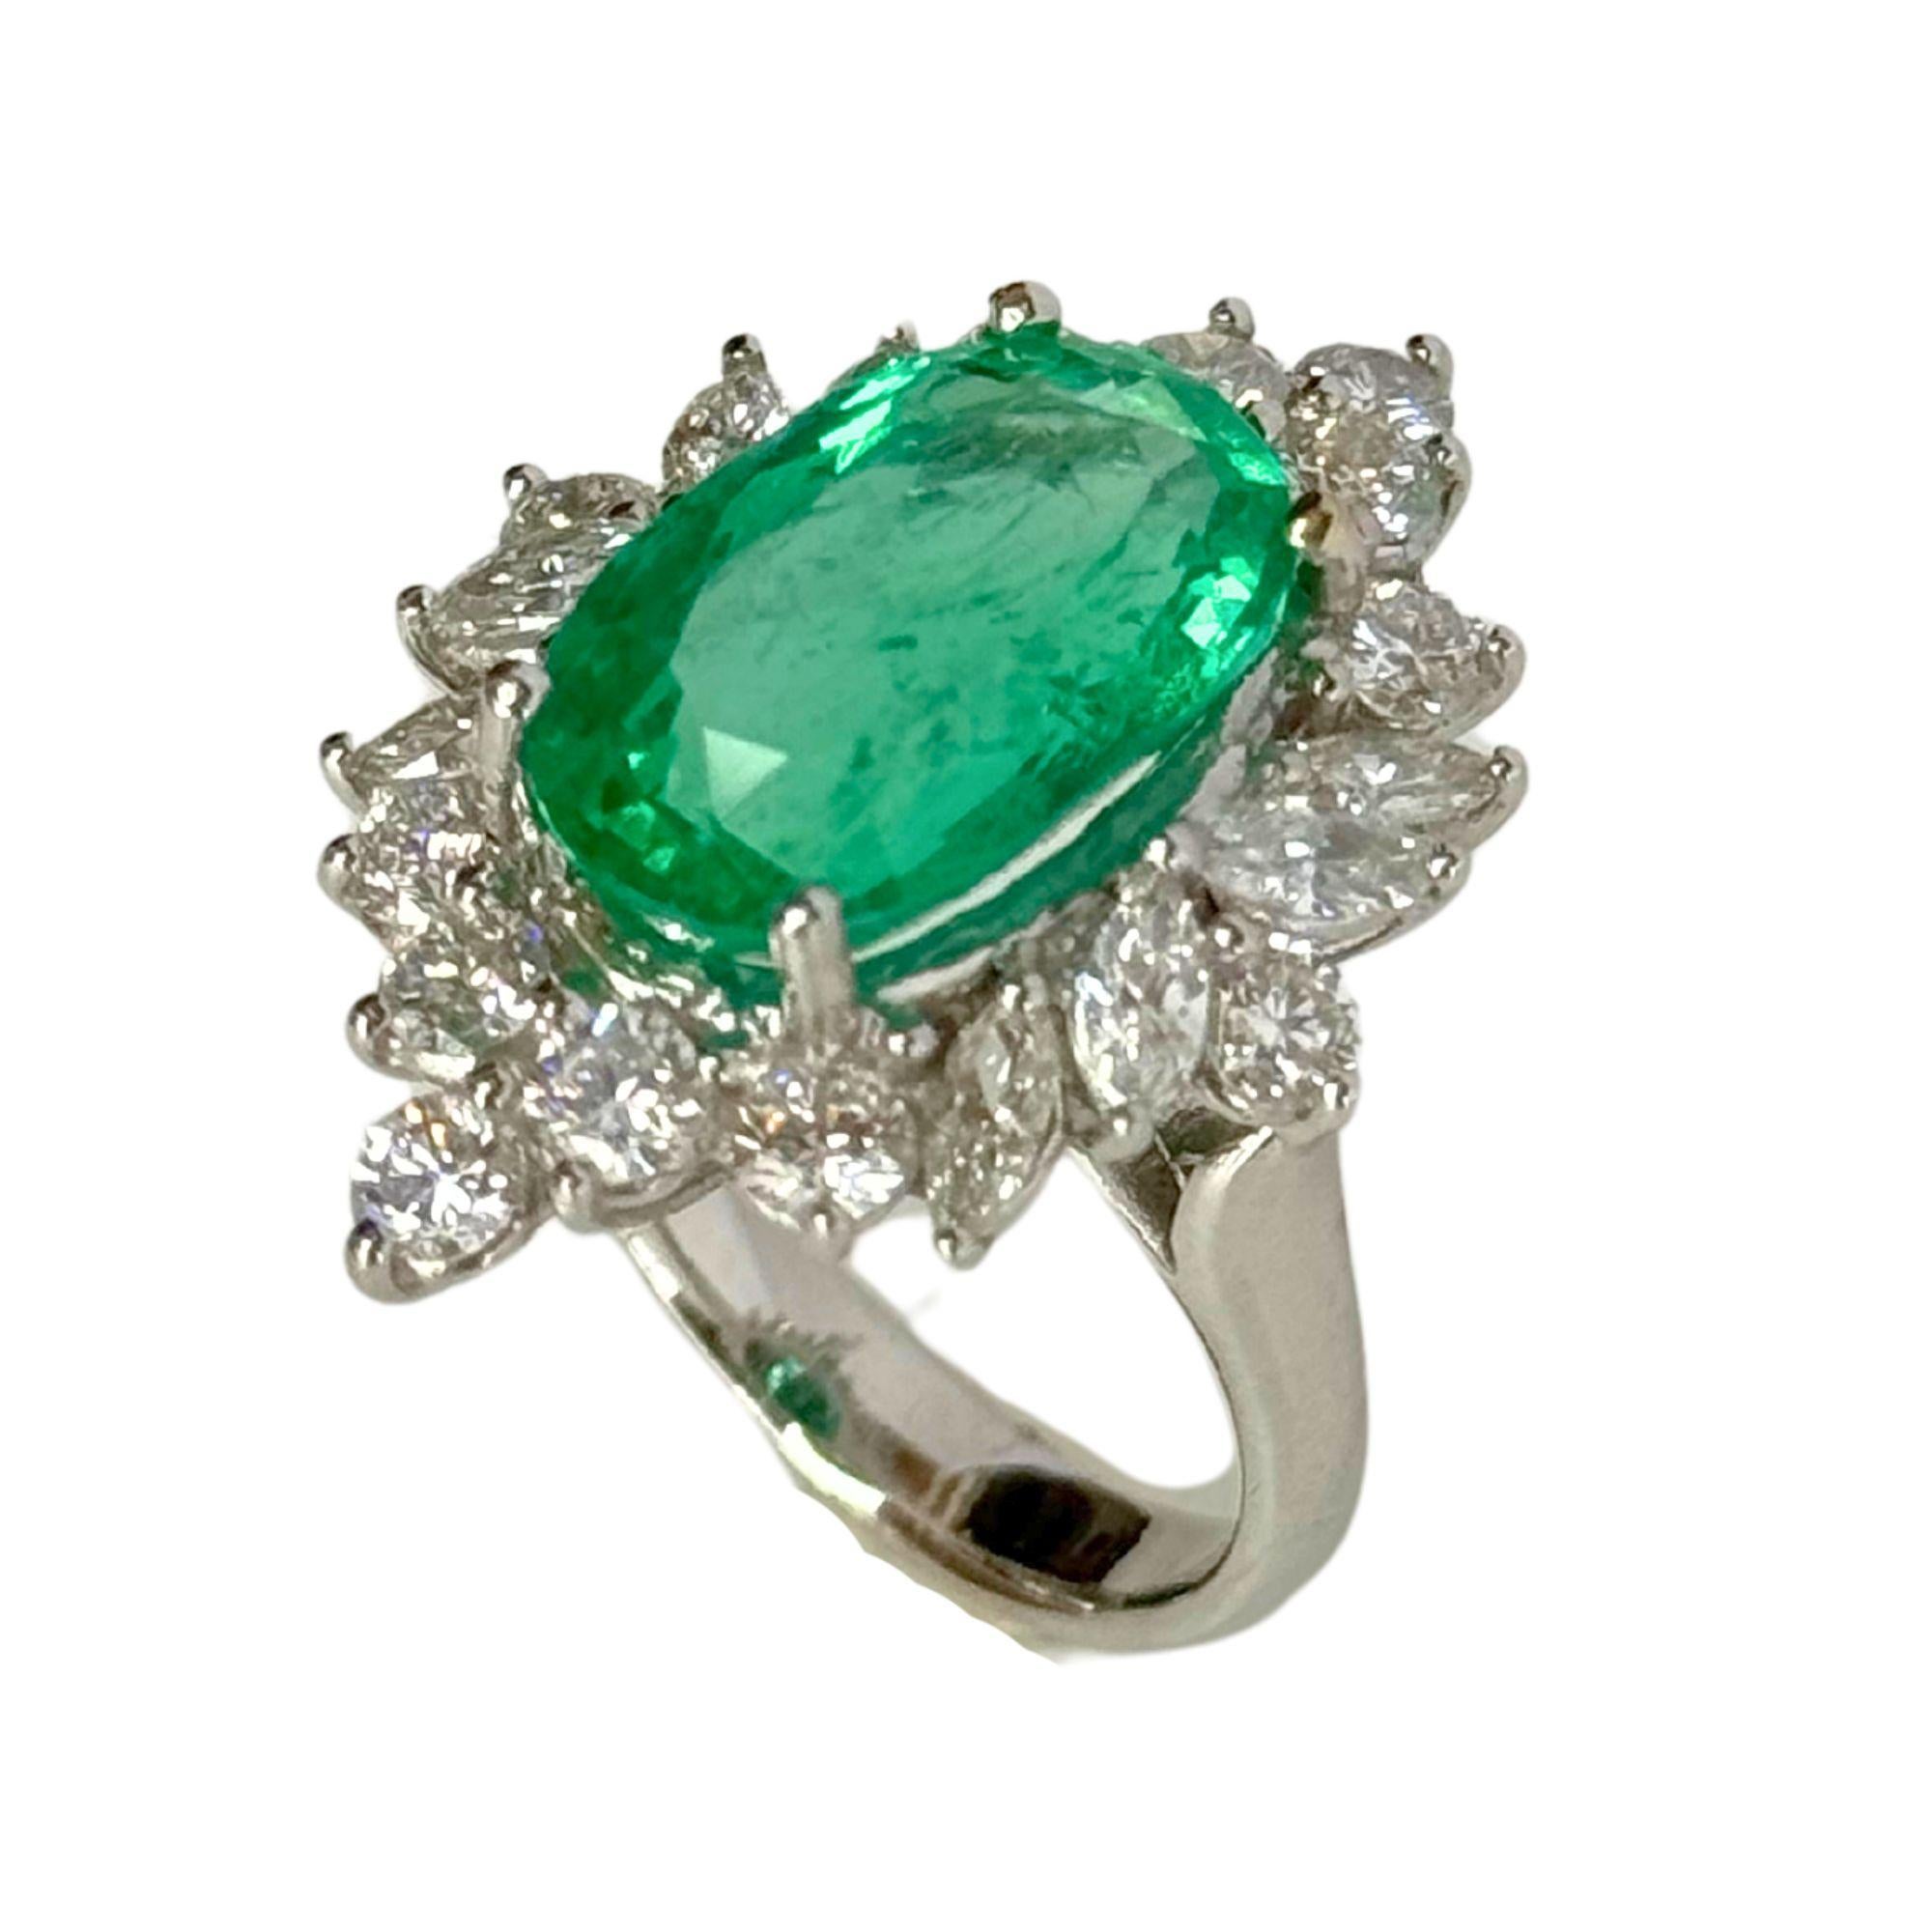 Erhöhen Sie Ihren Stil mit unserem atemberaubenden GIA-zertifizierten 18-karätigen Diamant- und Smaragdring. Dieser Ring aus 18 Karat Weißgold mit einem Gesamtgewicht von 8,59 Gramm ist mit einem funkelnden Diamanten von 1,93 Karat und einem